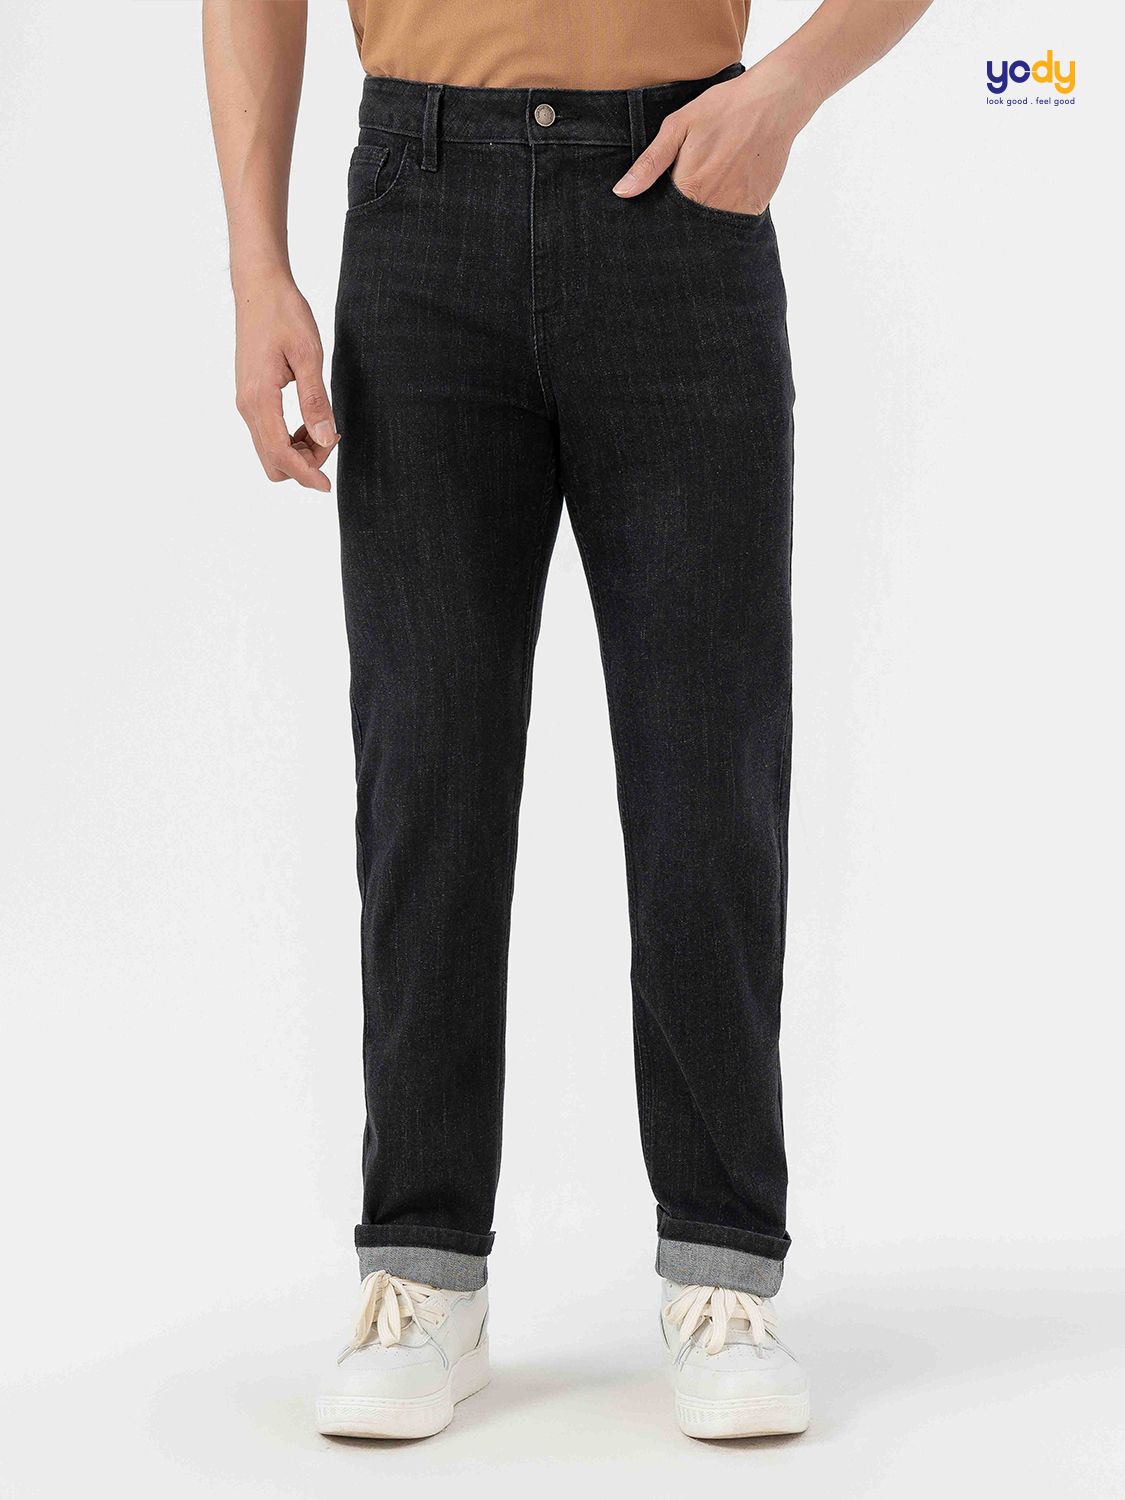 Quần jeans nam YODY slim fit chất liệu coolmax màu đen co dãn thoáng mát QJM7005